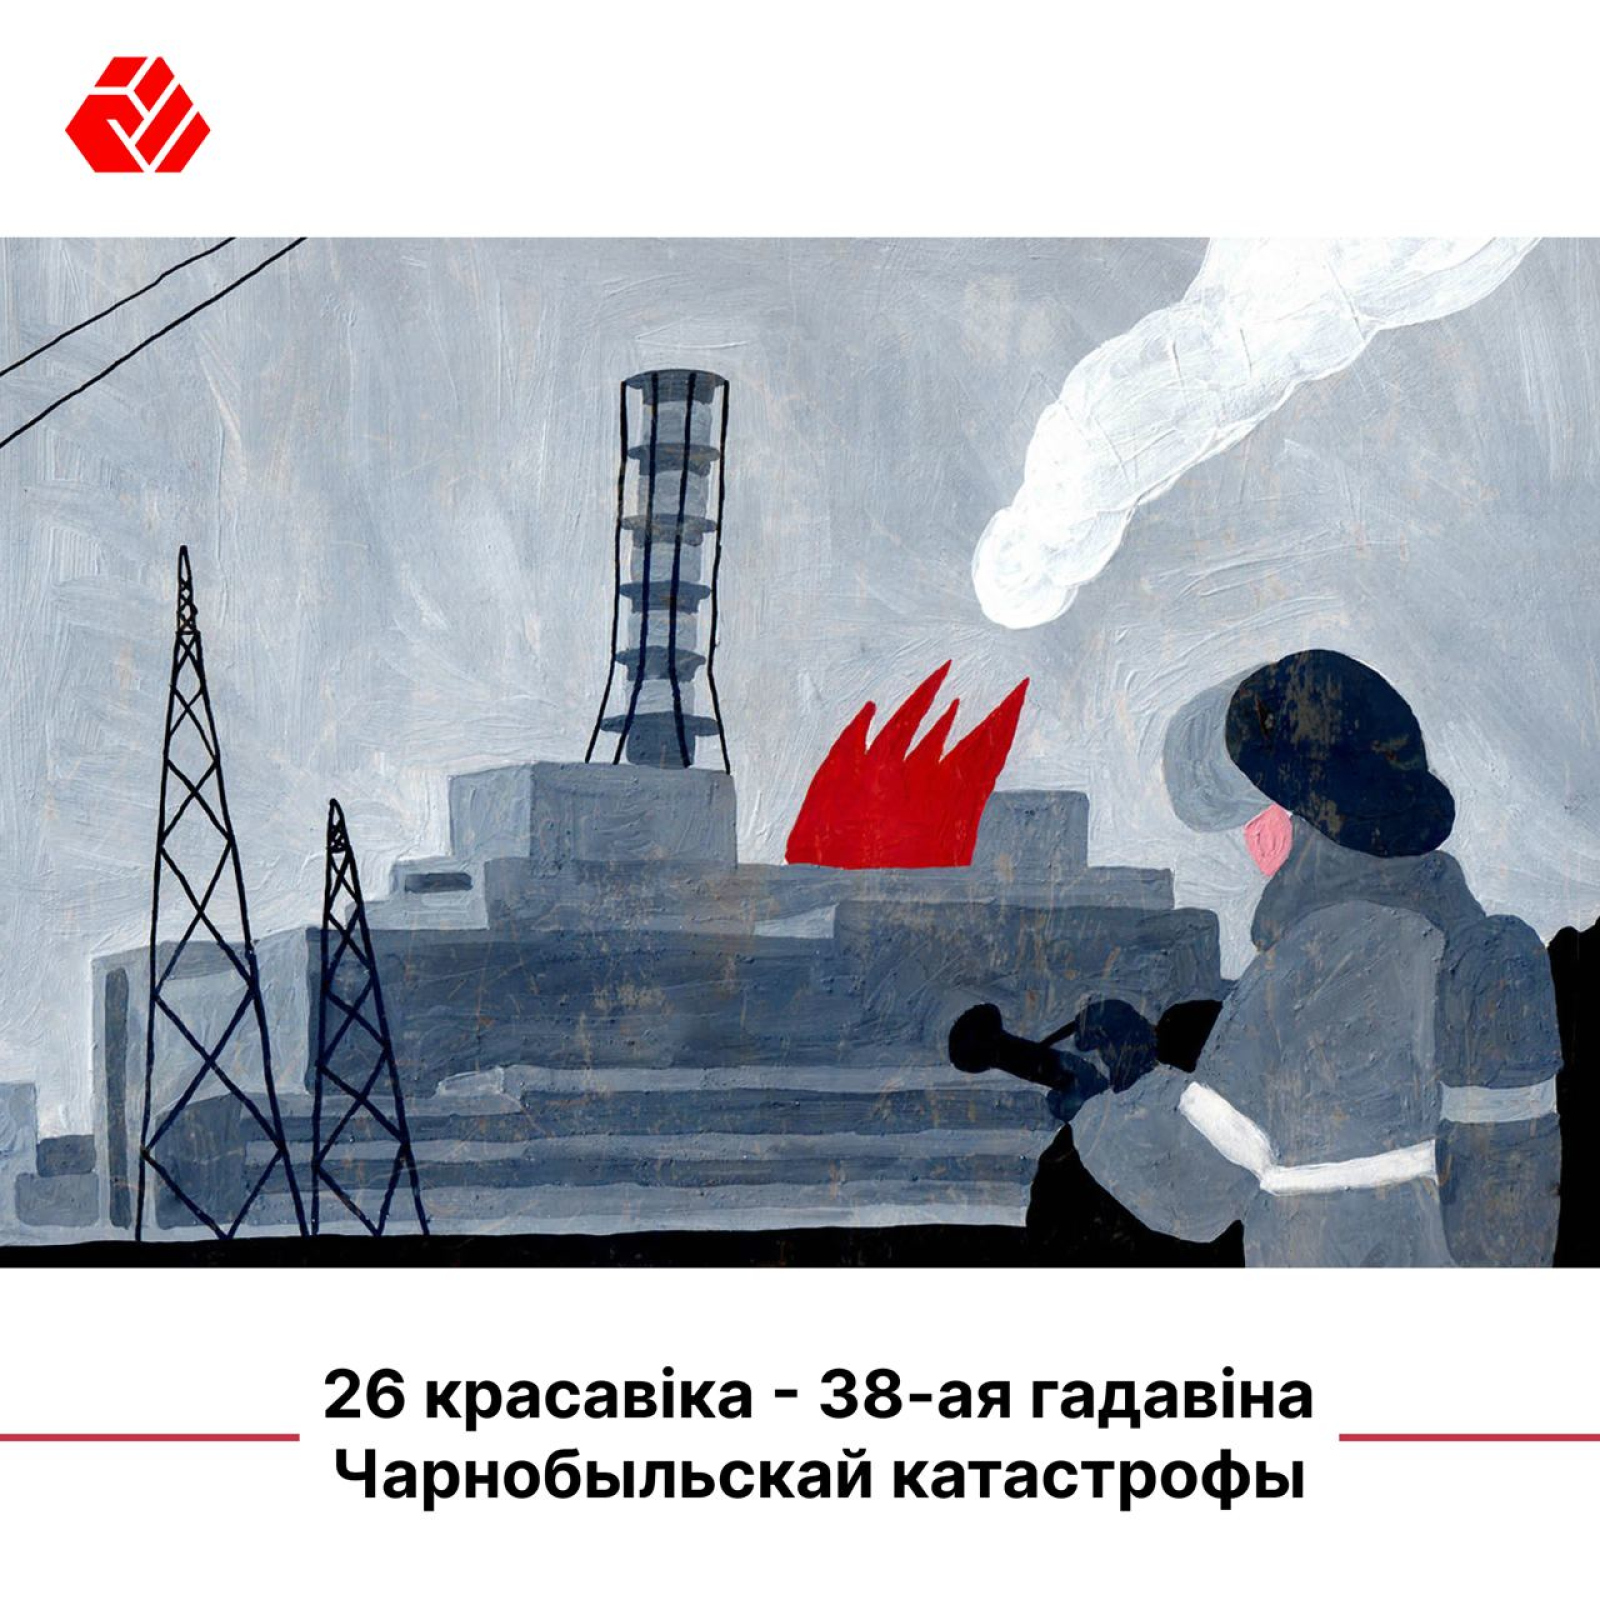 26 апреля - 38-годовщина Чернобыльской катастрофы